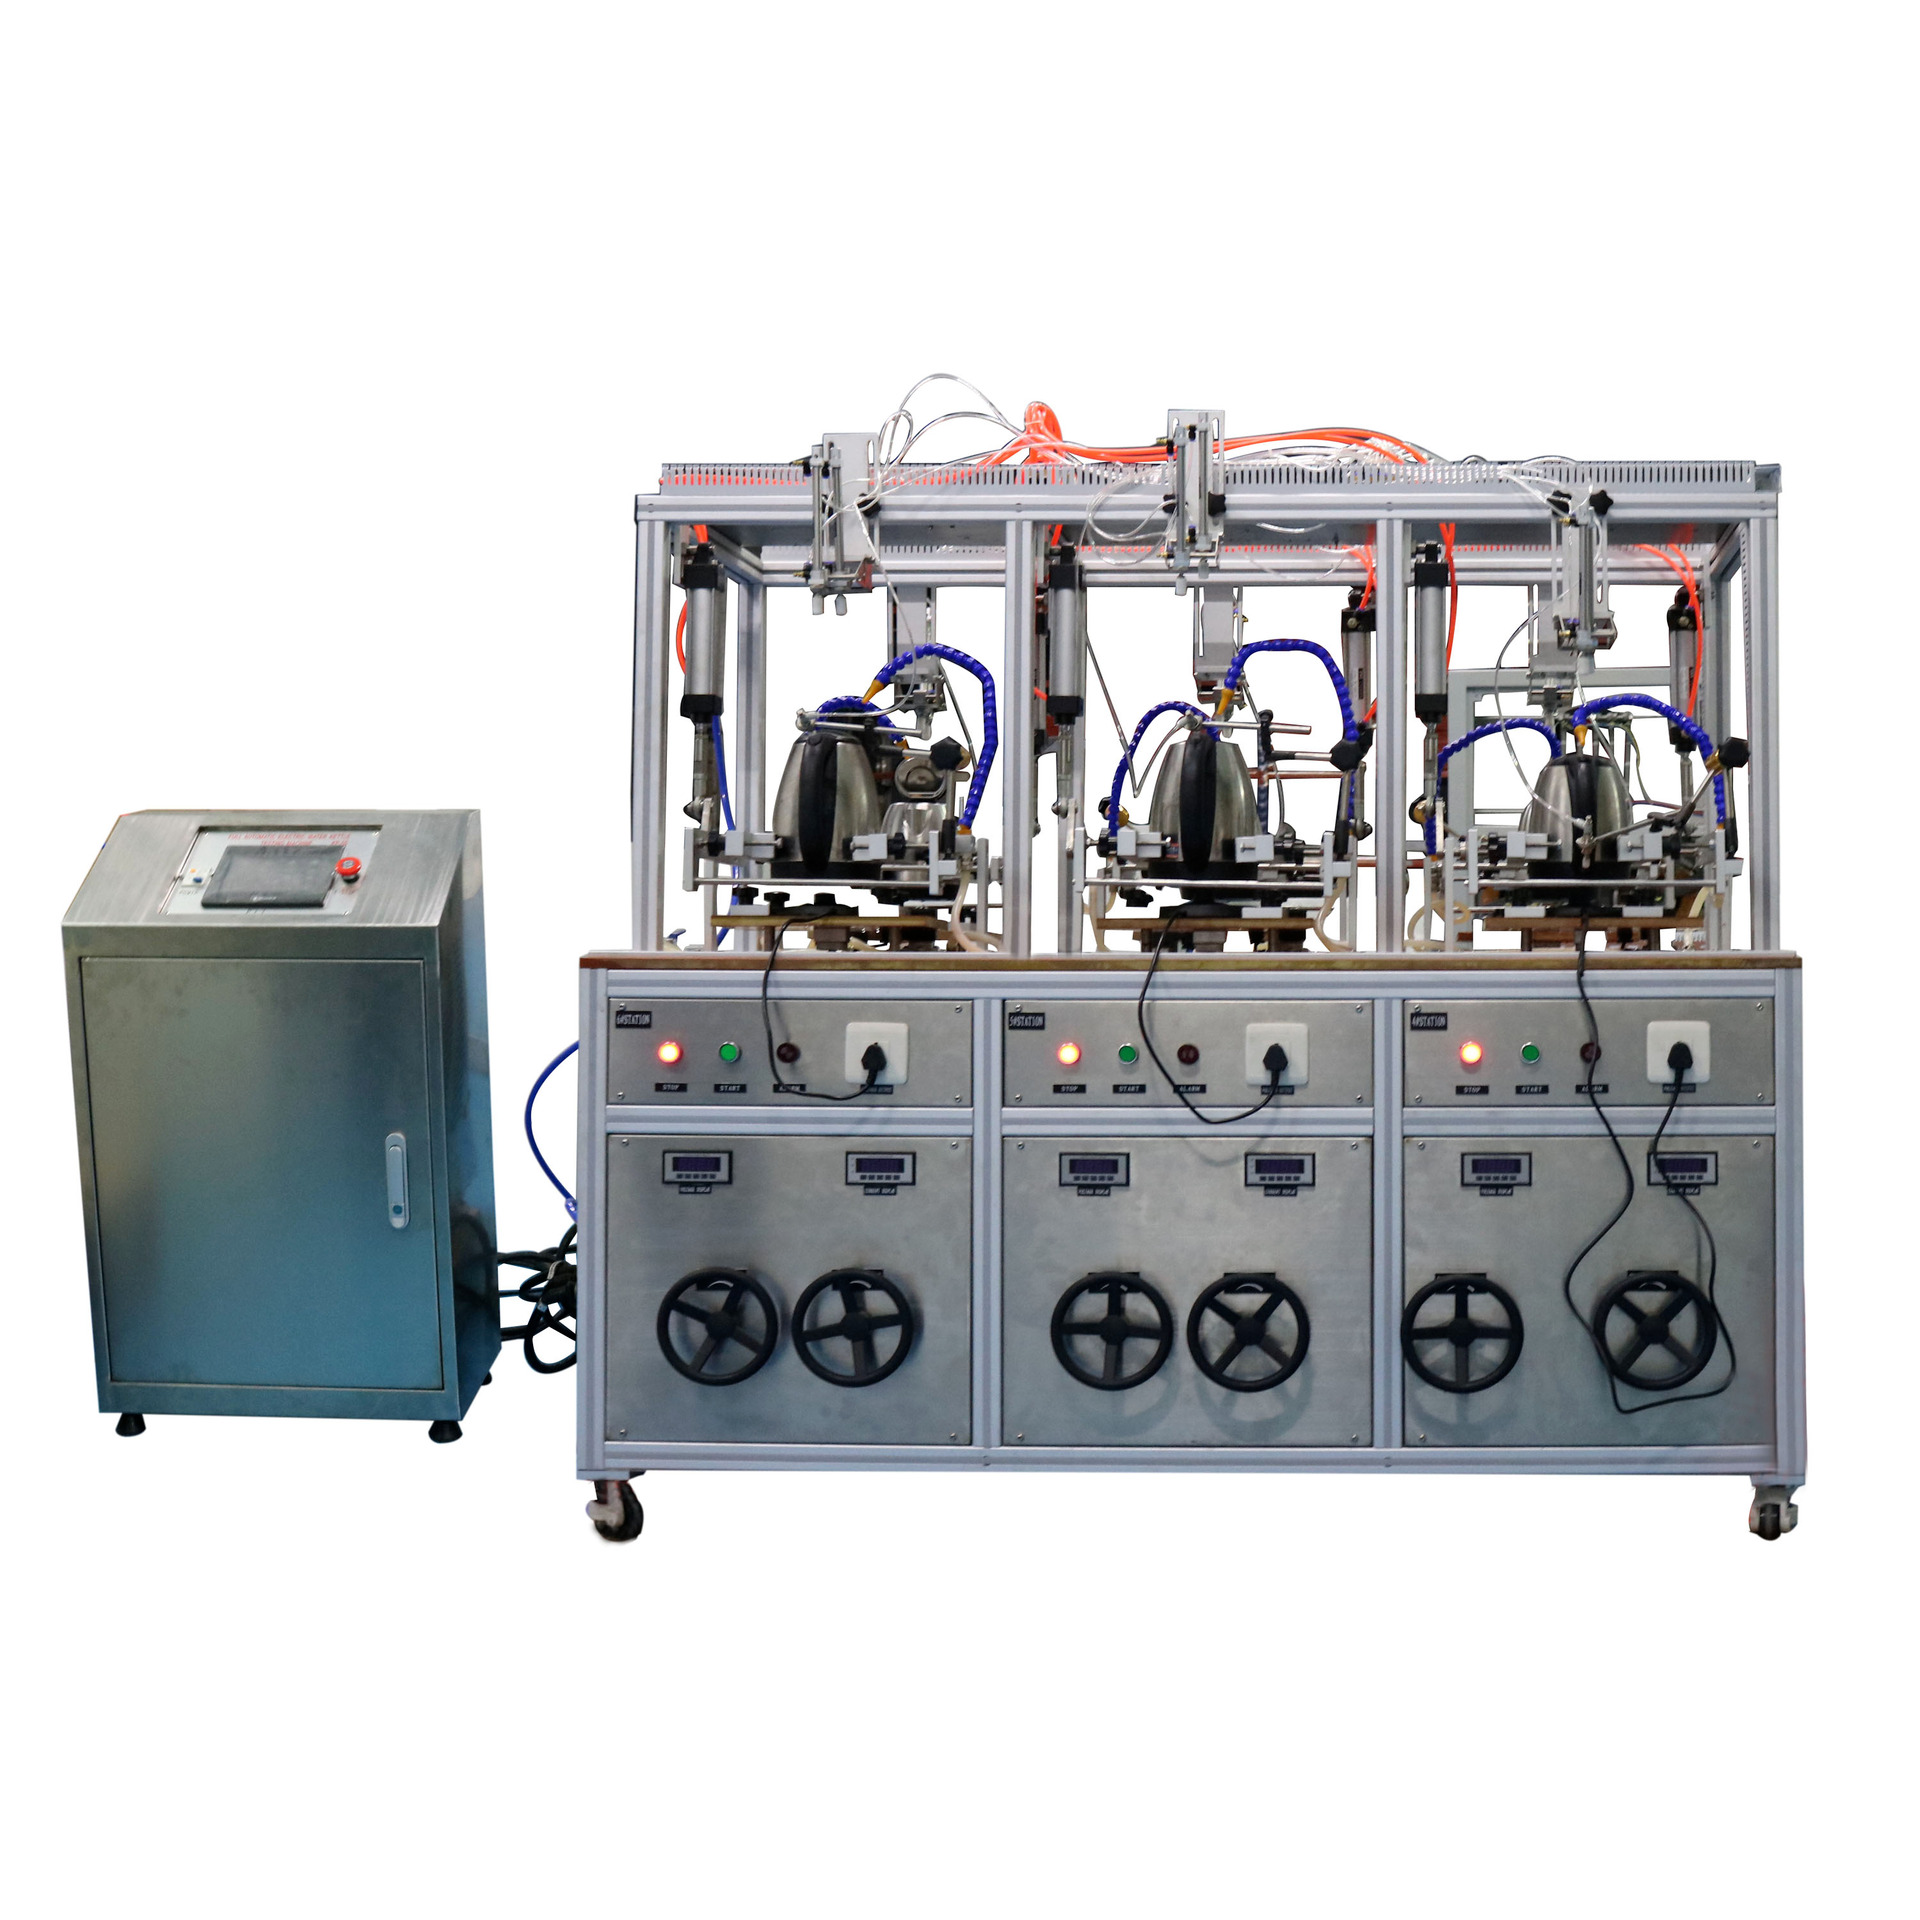 搅拌机综合测试台 JAY-5227  嘉仪珠海  用于检验搅拌机的各项性能